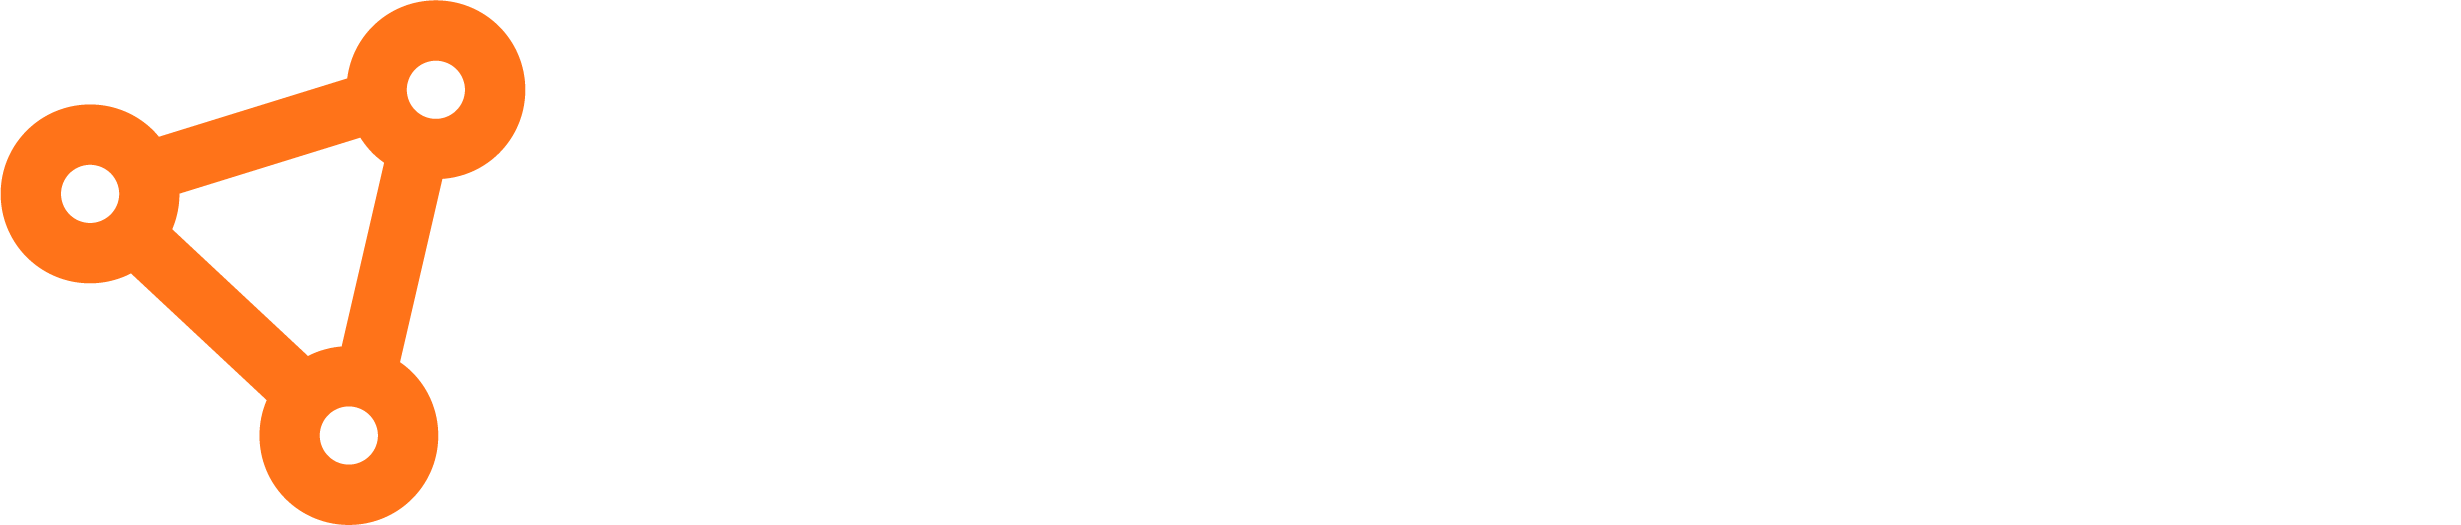 Cosmos Platform